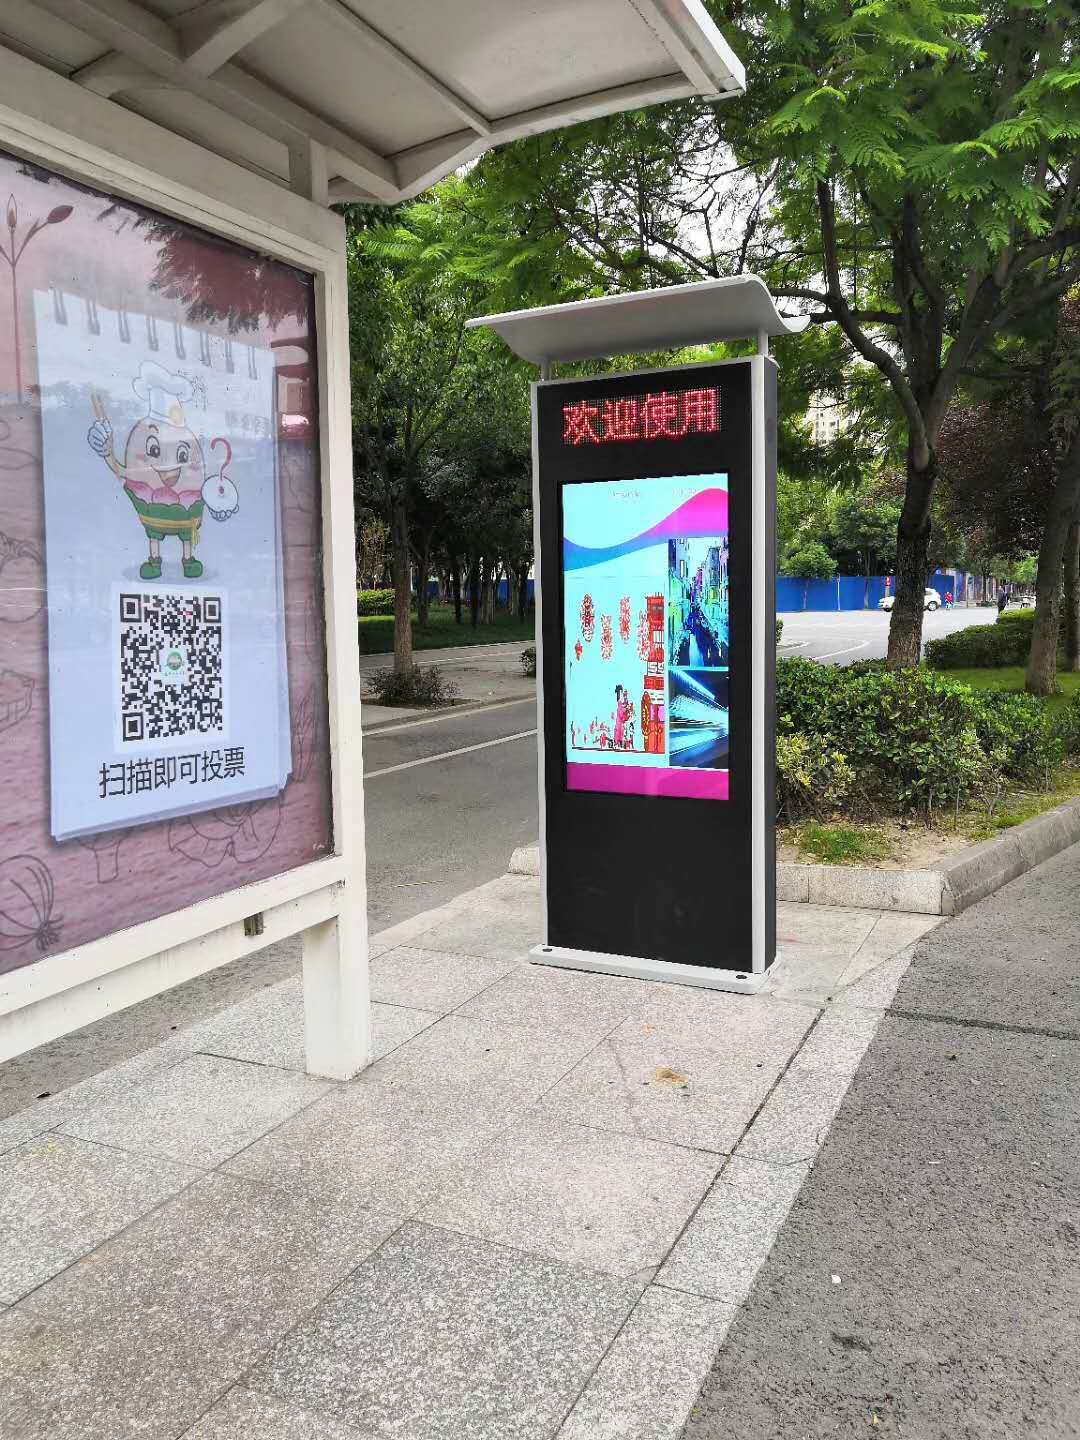 公交站牌橱窗海报张贴效果图样机贴图 Bus Stop Poster – Mockups FH-变色鱼